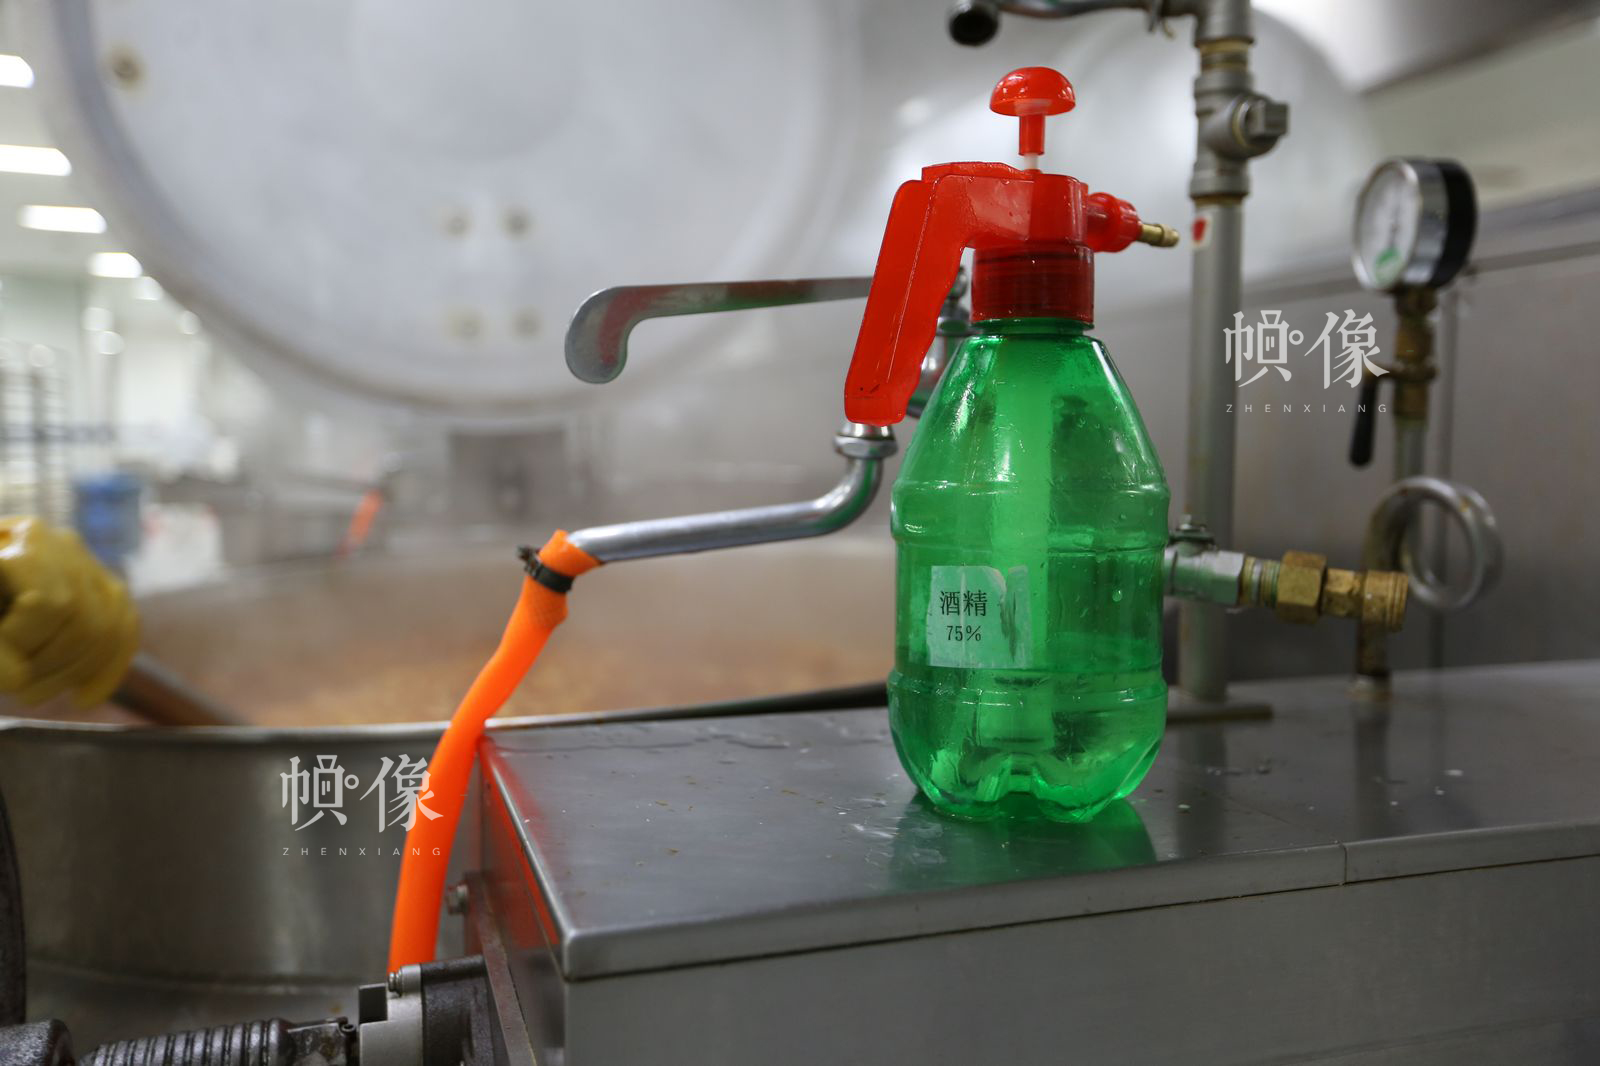 热处理车间用于消毒的酒精。中国网记者 吴闻达 摄